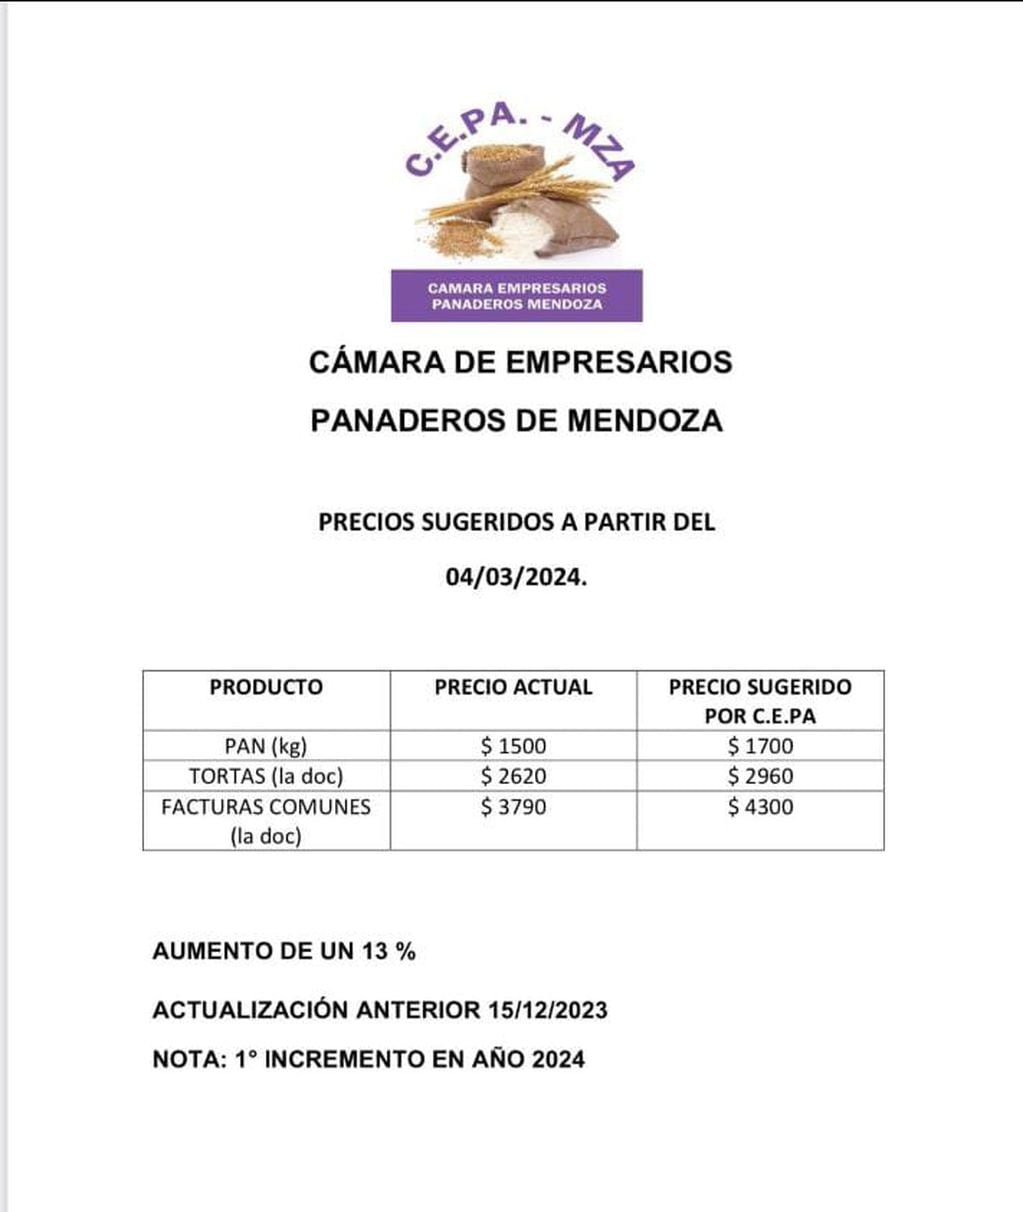 Comunicado de la Cámara de Empresarios Panaderos de Mendoza. Imagen: CEPA - MZA